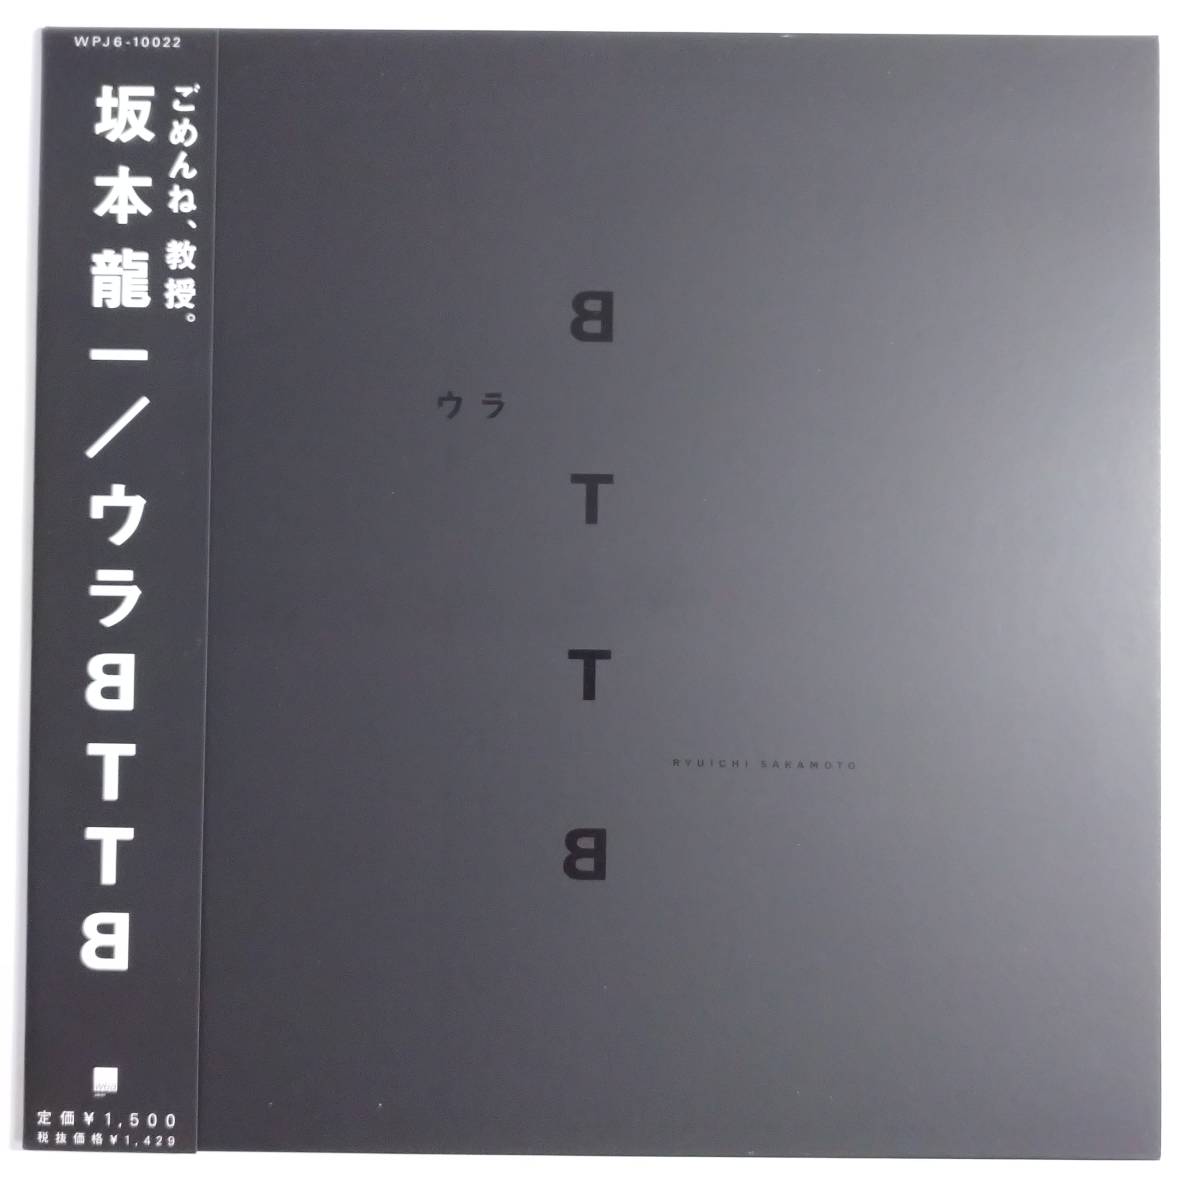 ヤフオク! -「坂本龍一 bttb」(レコード) の落札相場・落札価格